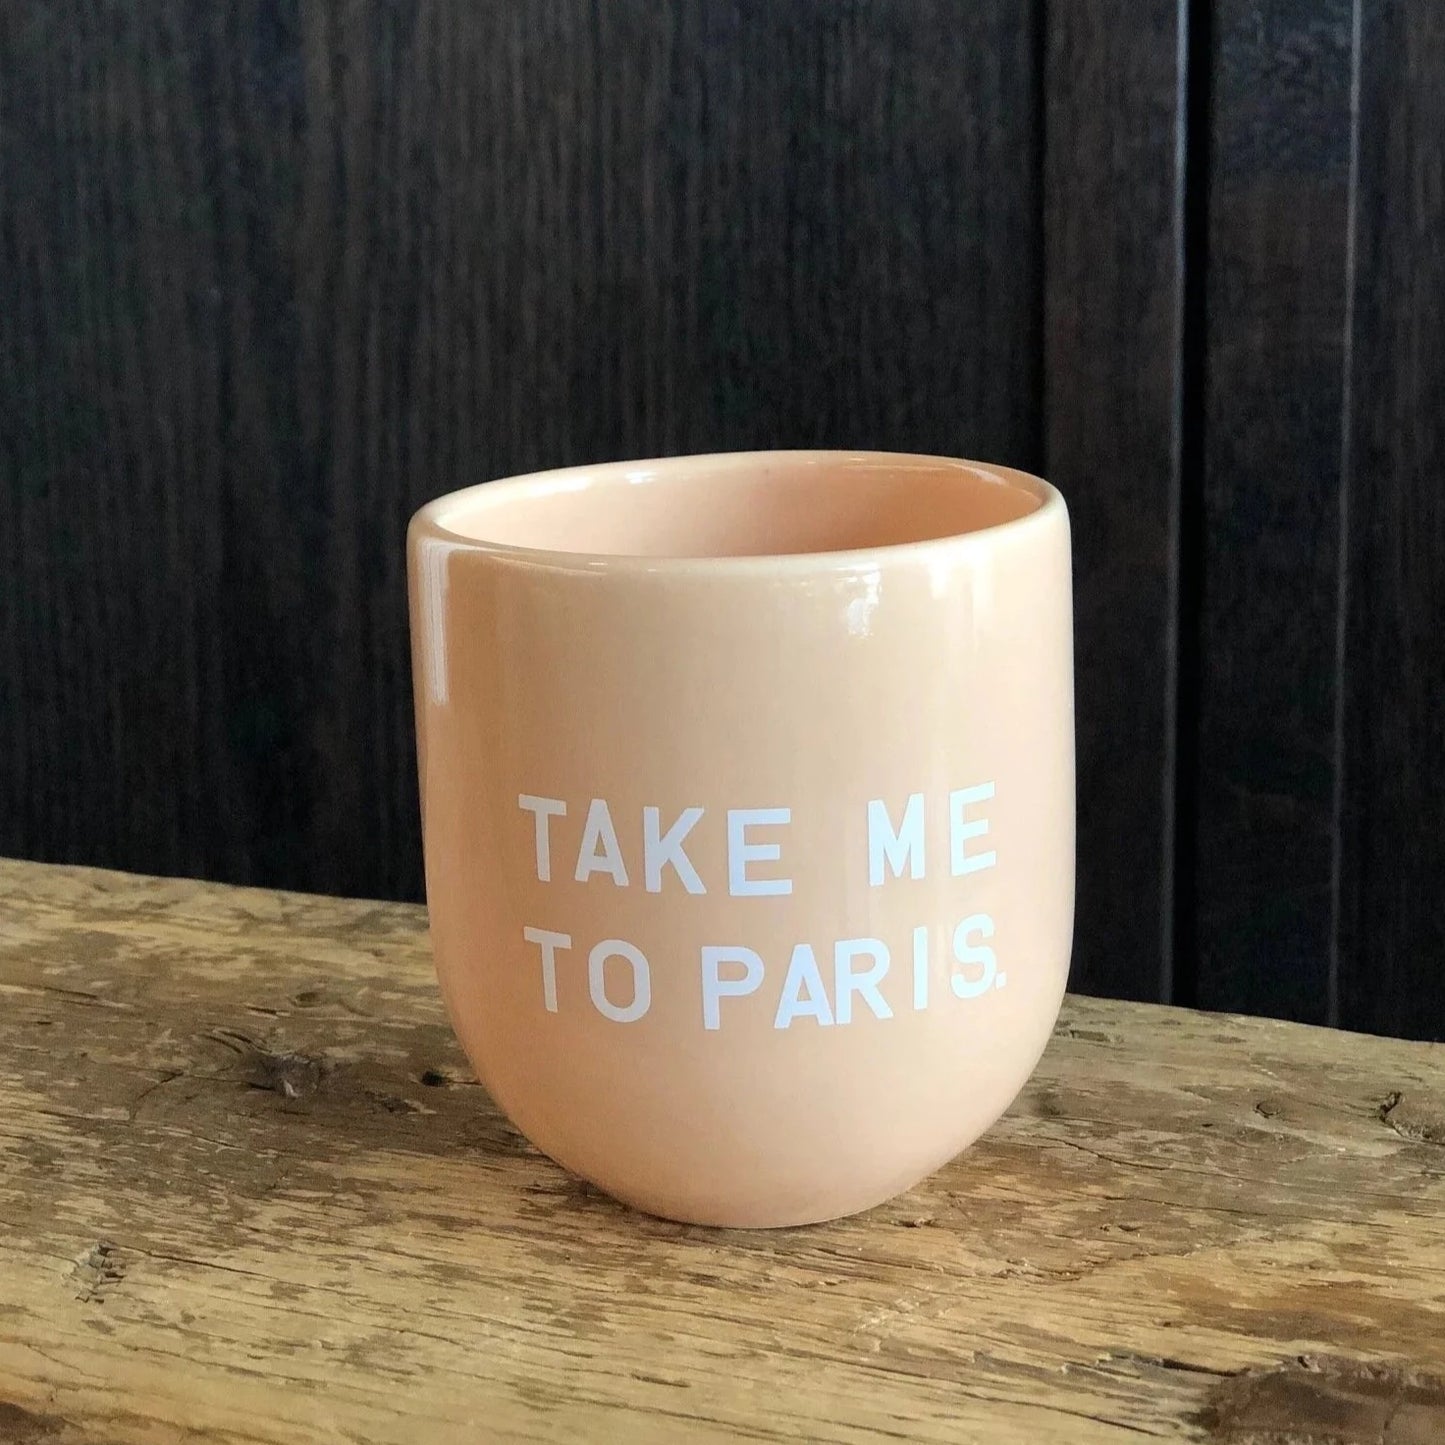 Statement Becher "TAKE ME TO PARIS"